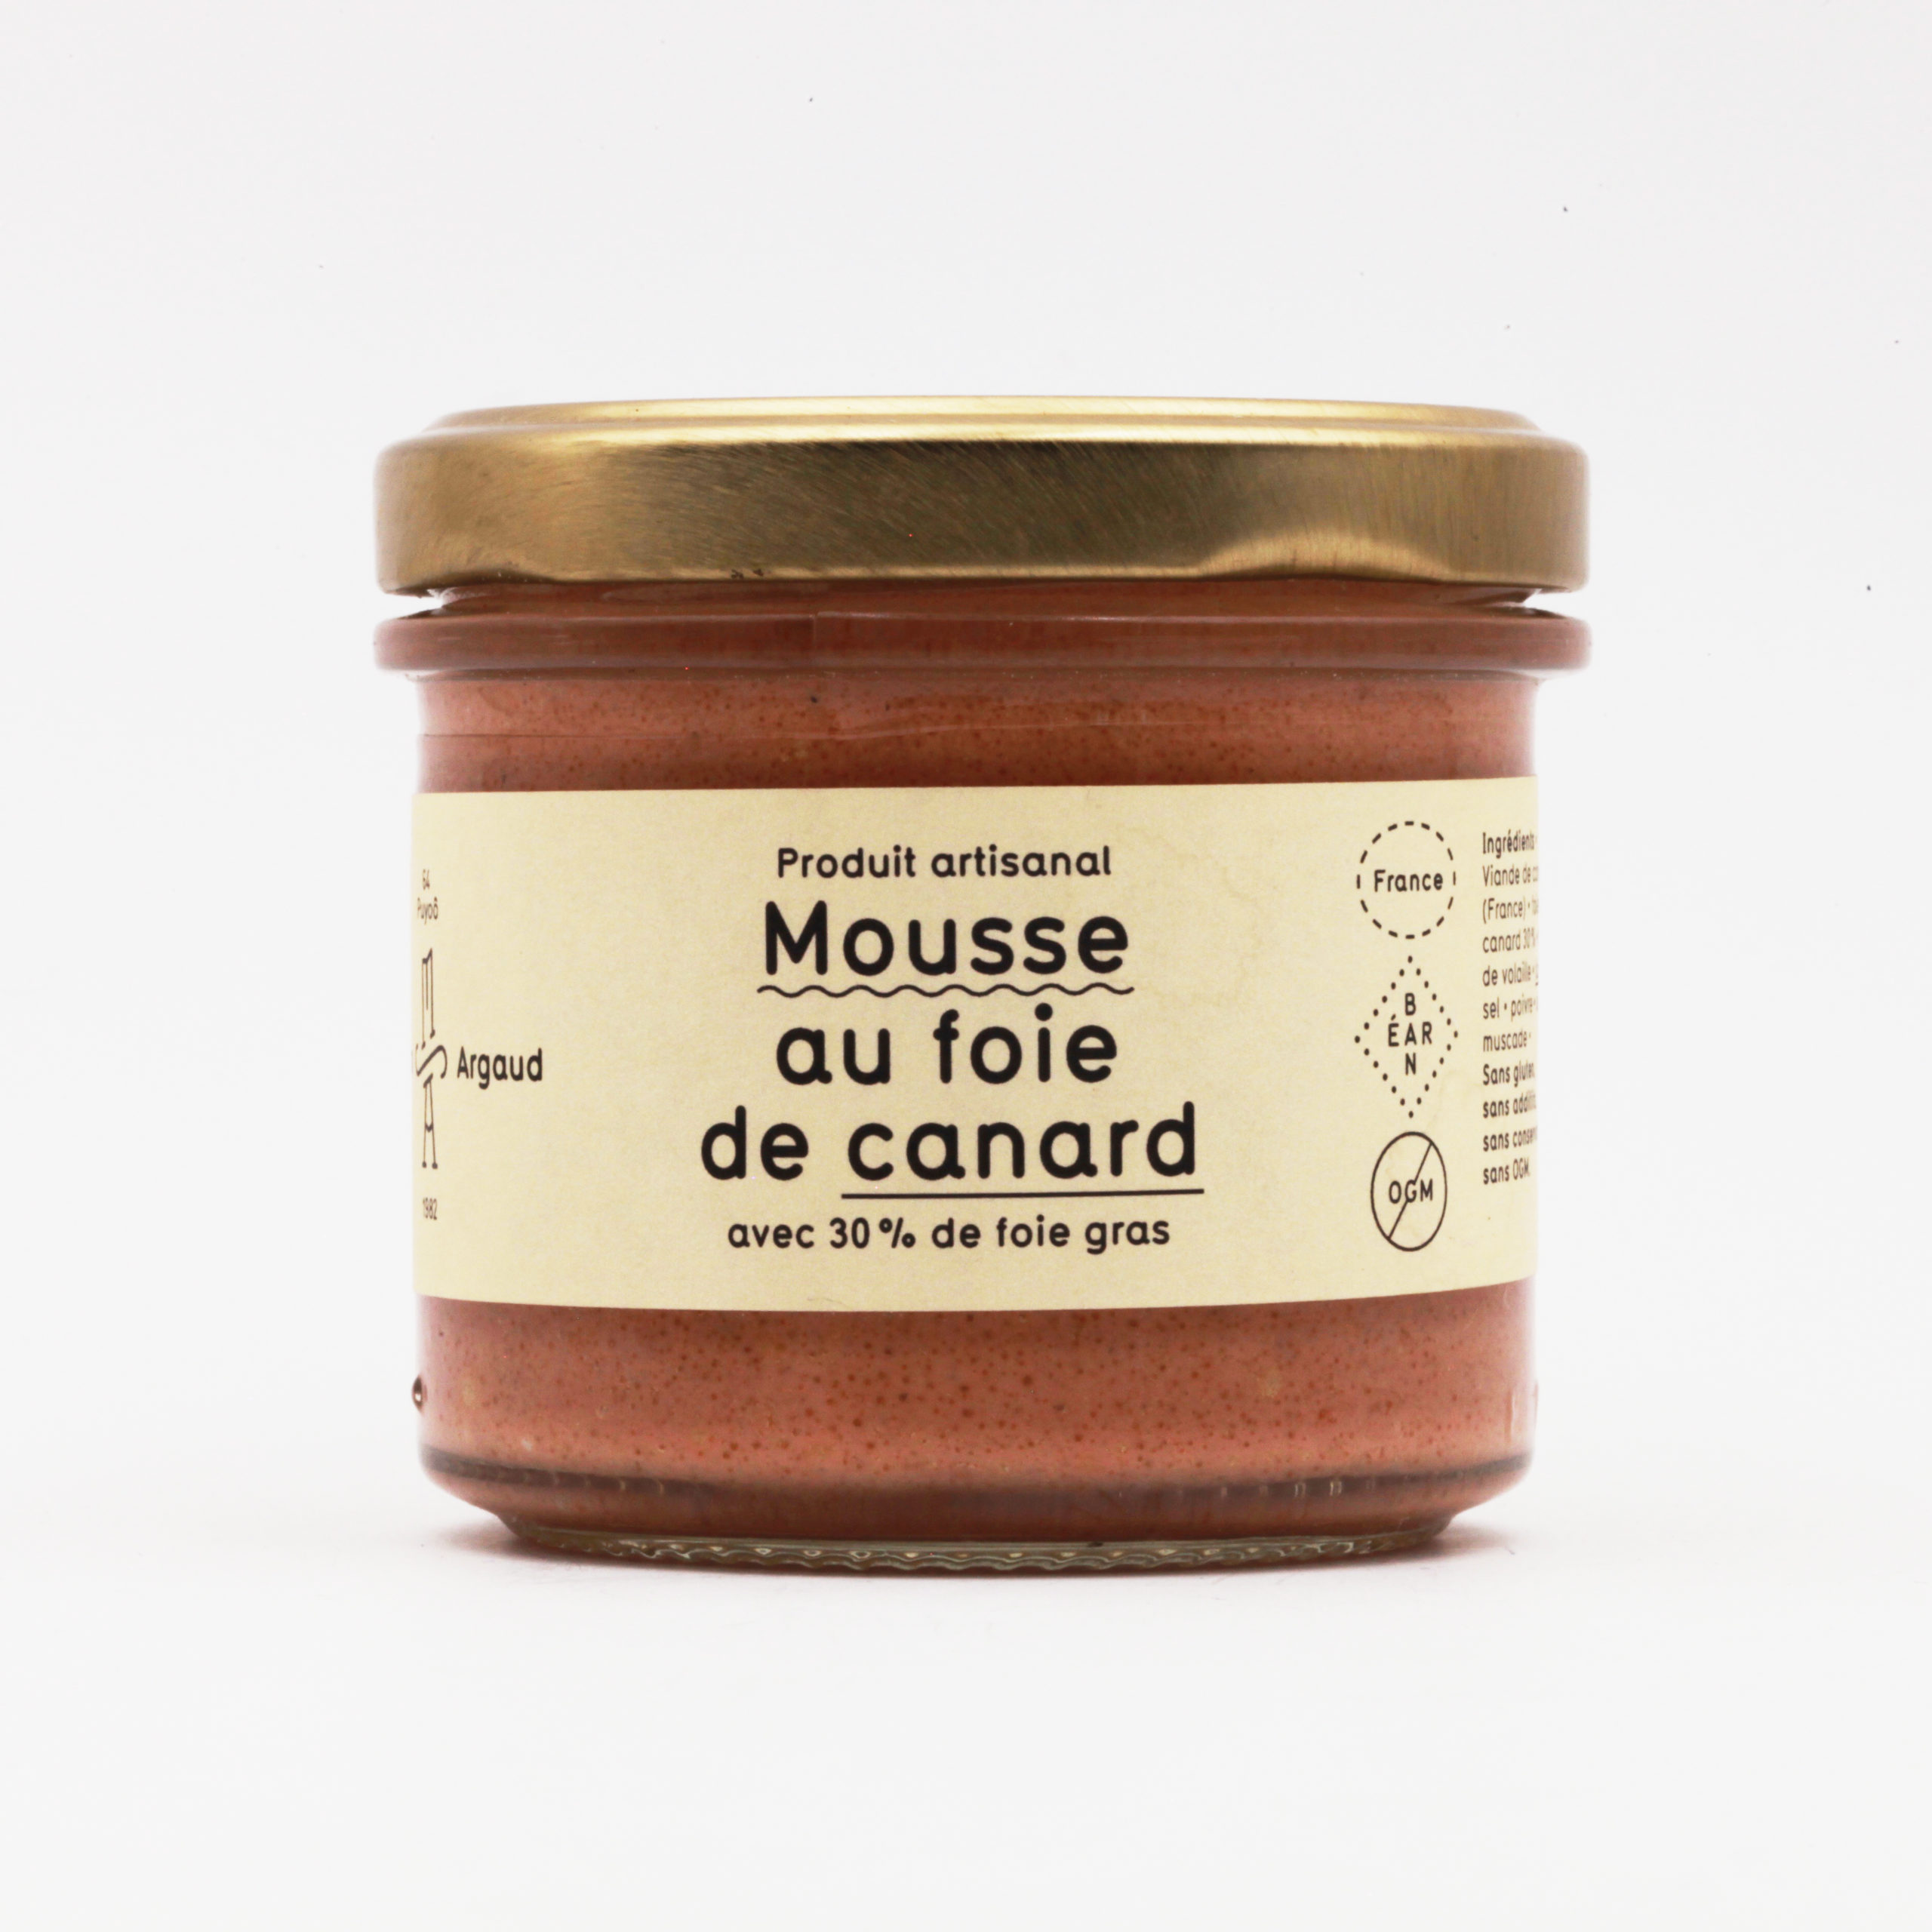 Coffret terrines et mousse de foie gras